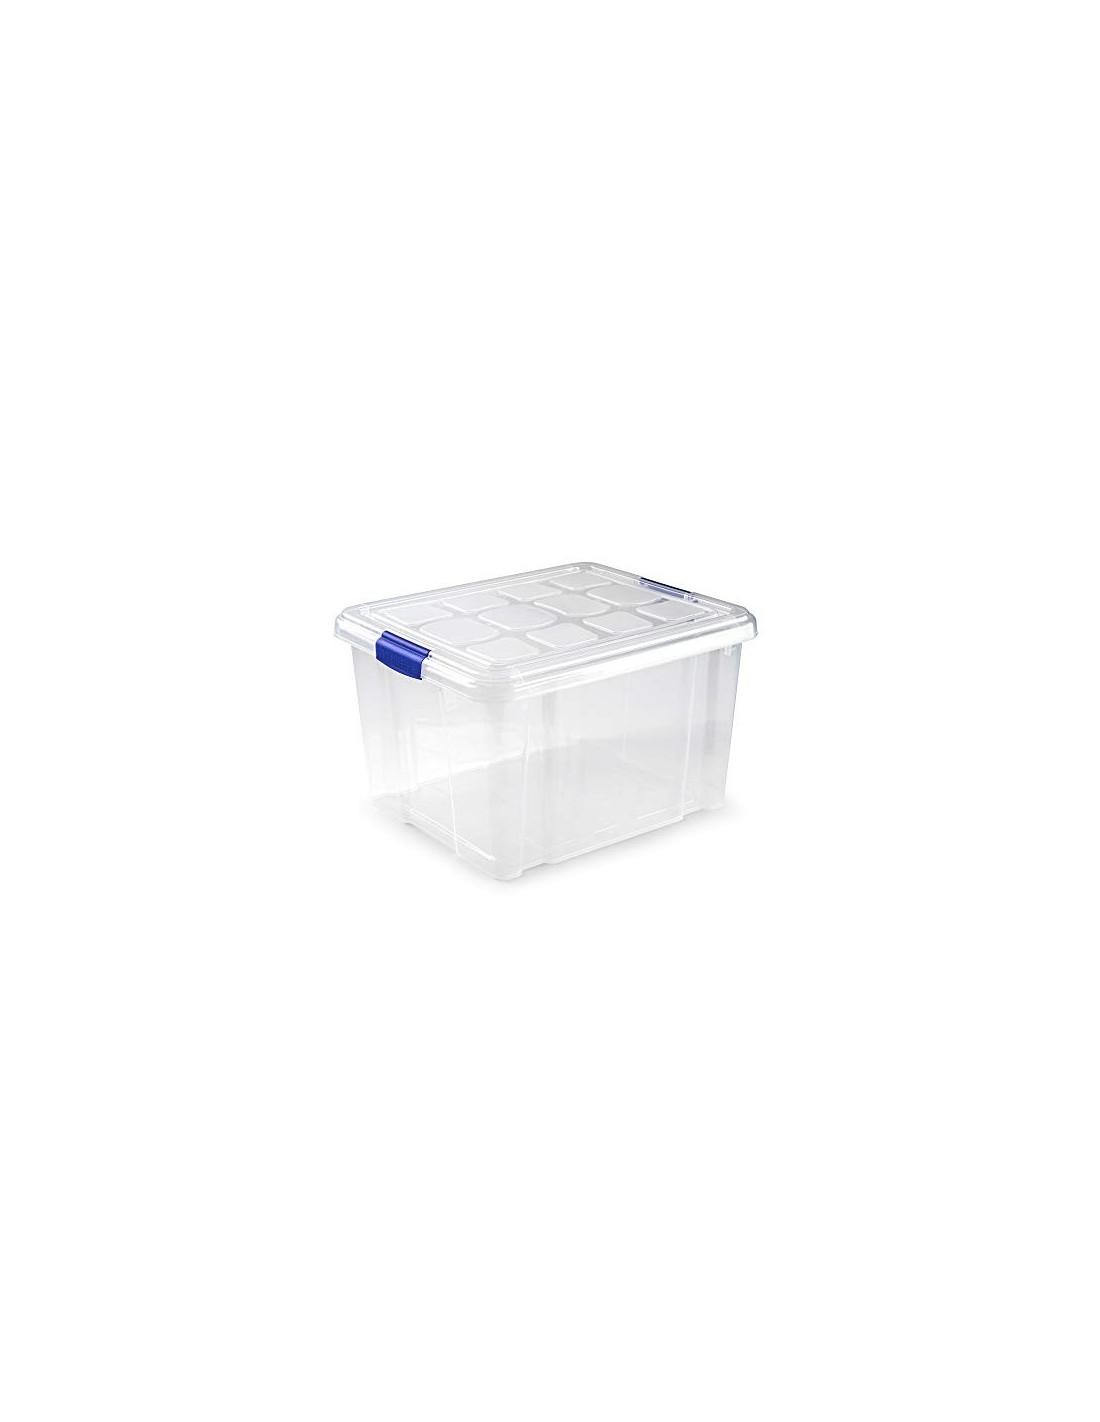 Caja de Almacenamiento nº 2, con Capacidad de 25 litros, sin Ruedas,  Especial para la organización del hogar